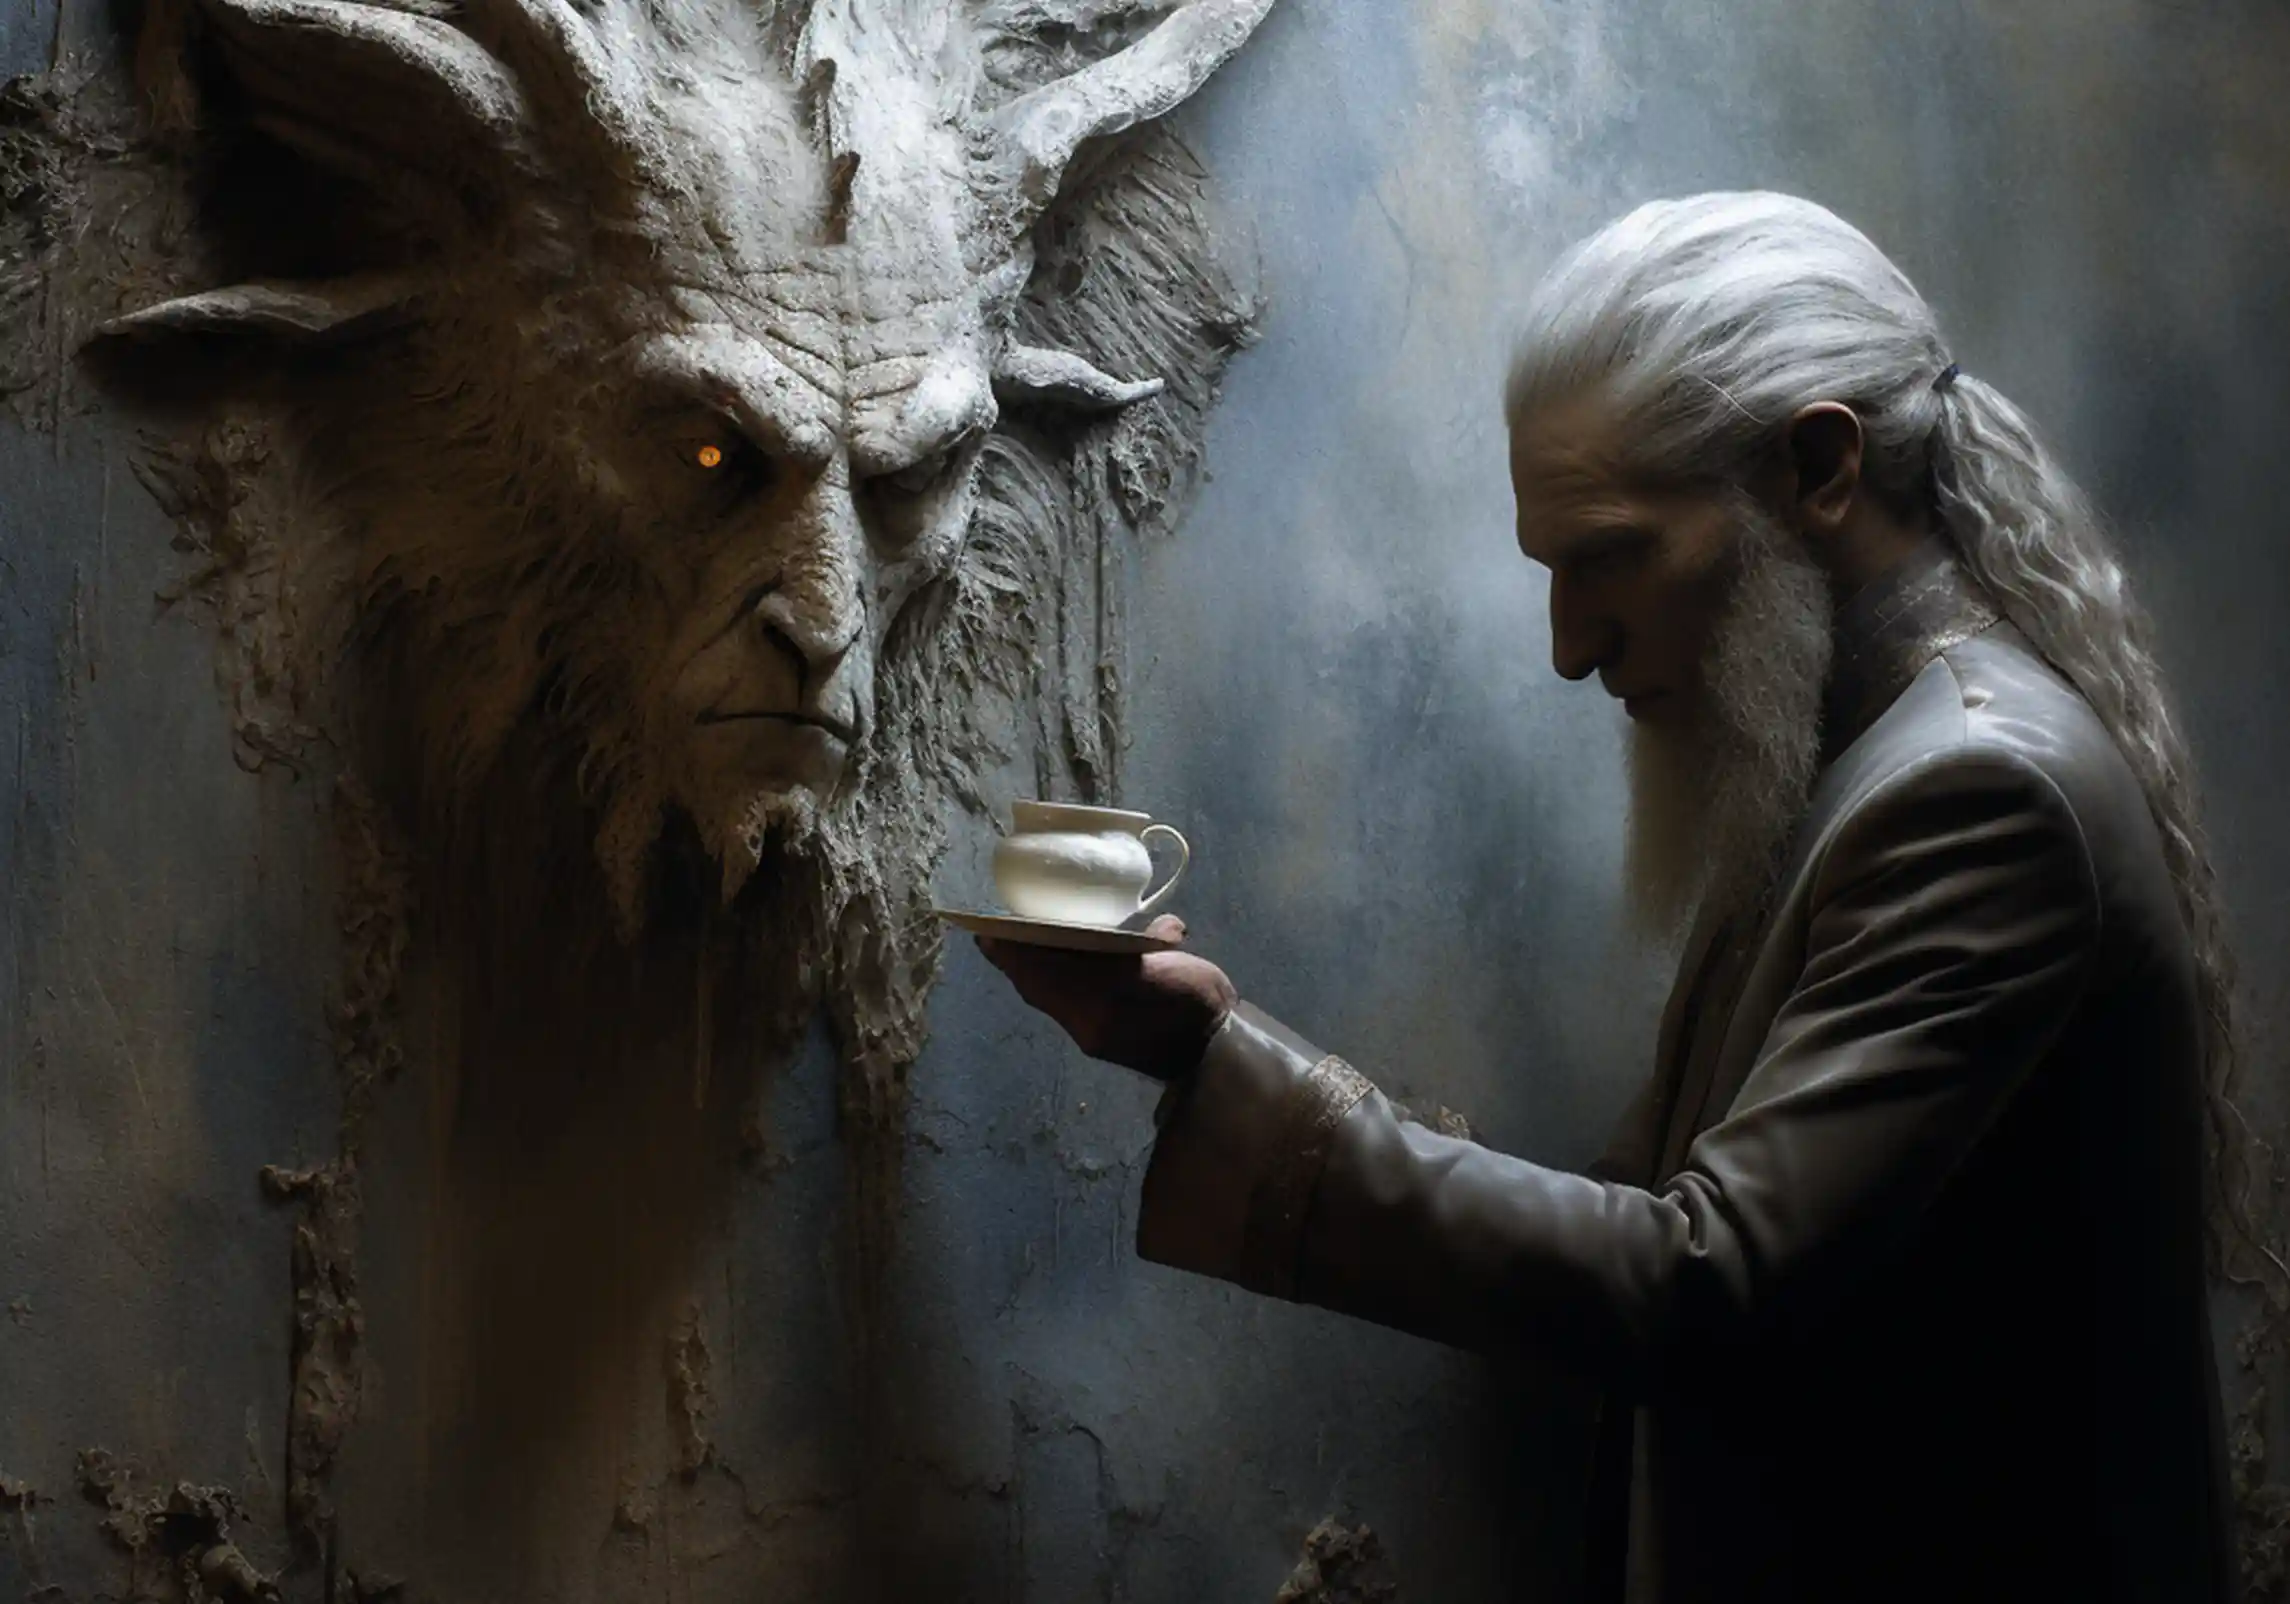 Wieviel Kaffee ist gesund? Das fragt dieser Elfe einen Dämonenkopf, der aus der Wand hervorragt.